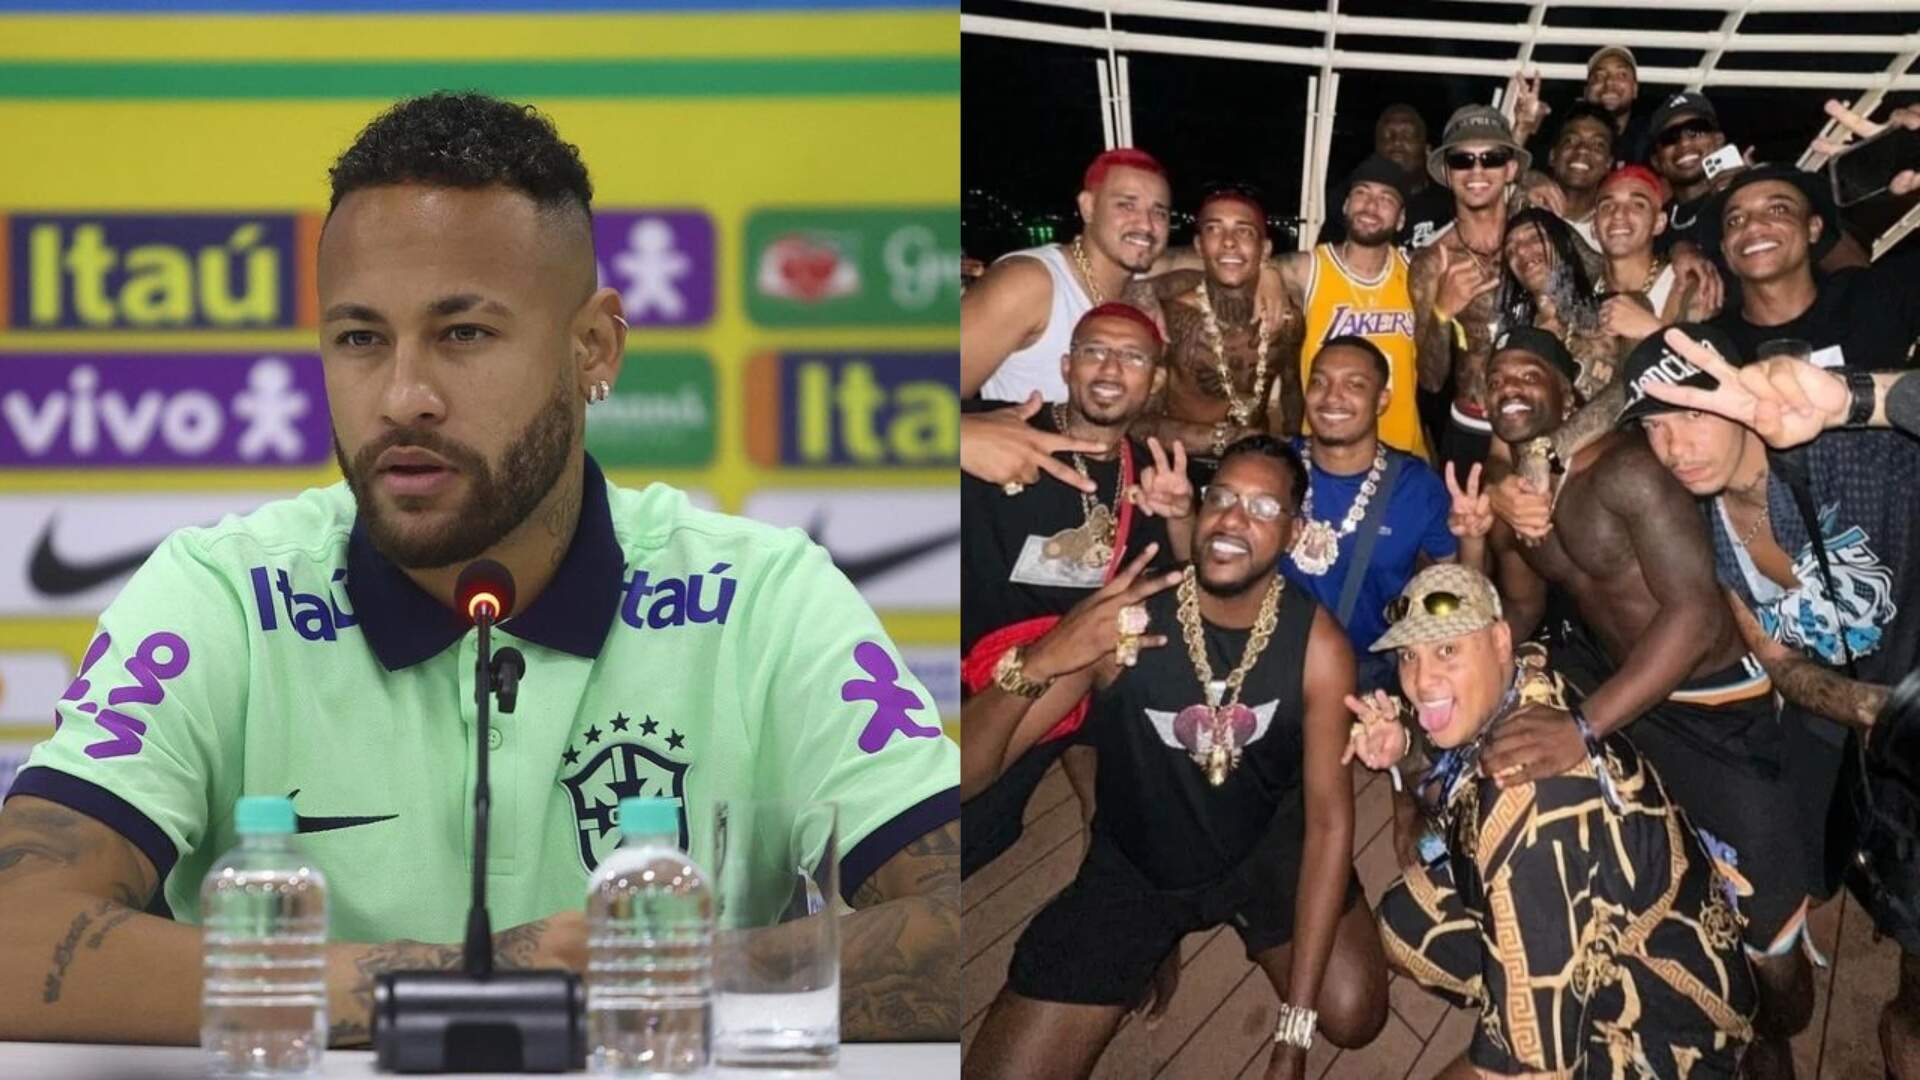 Amigos de Neymar relatam que joias foram furtadas durante ‘Ney Em Alto Mar’: “Sem entender” - Metropolitana FM